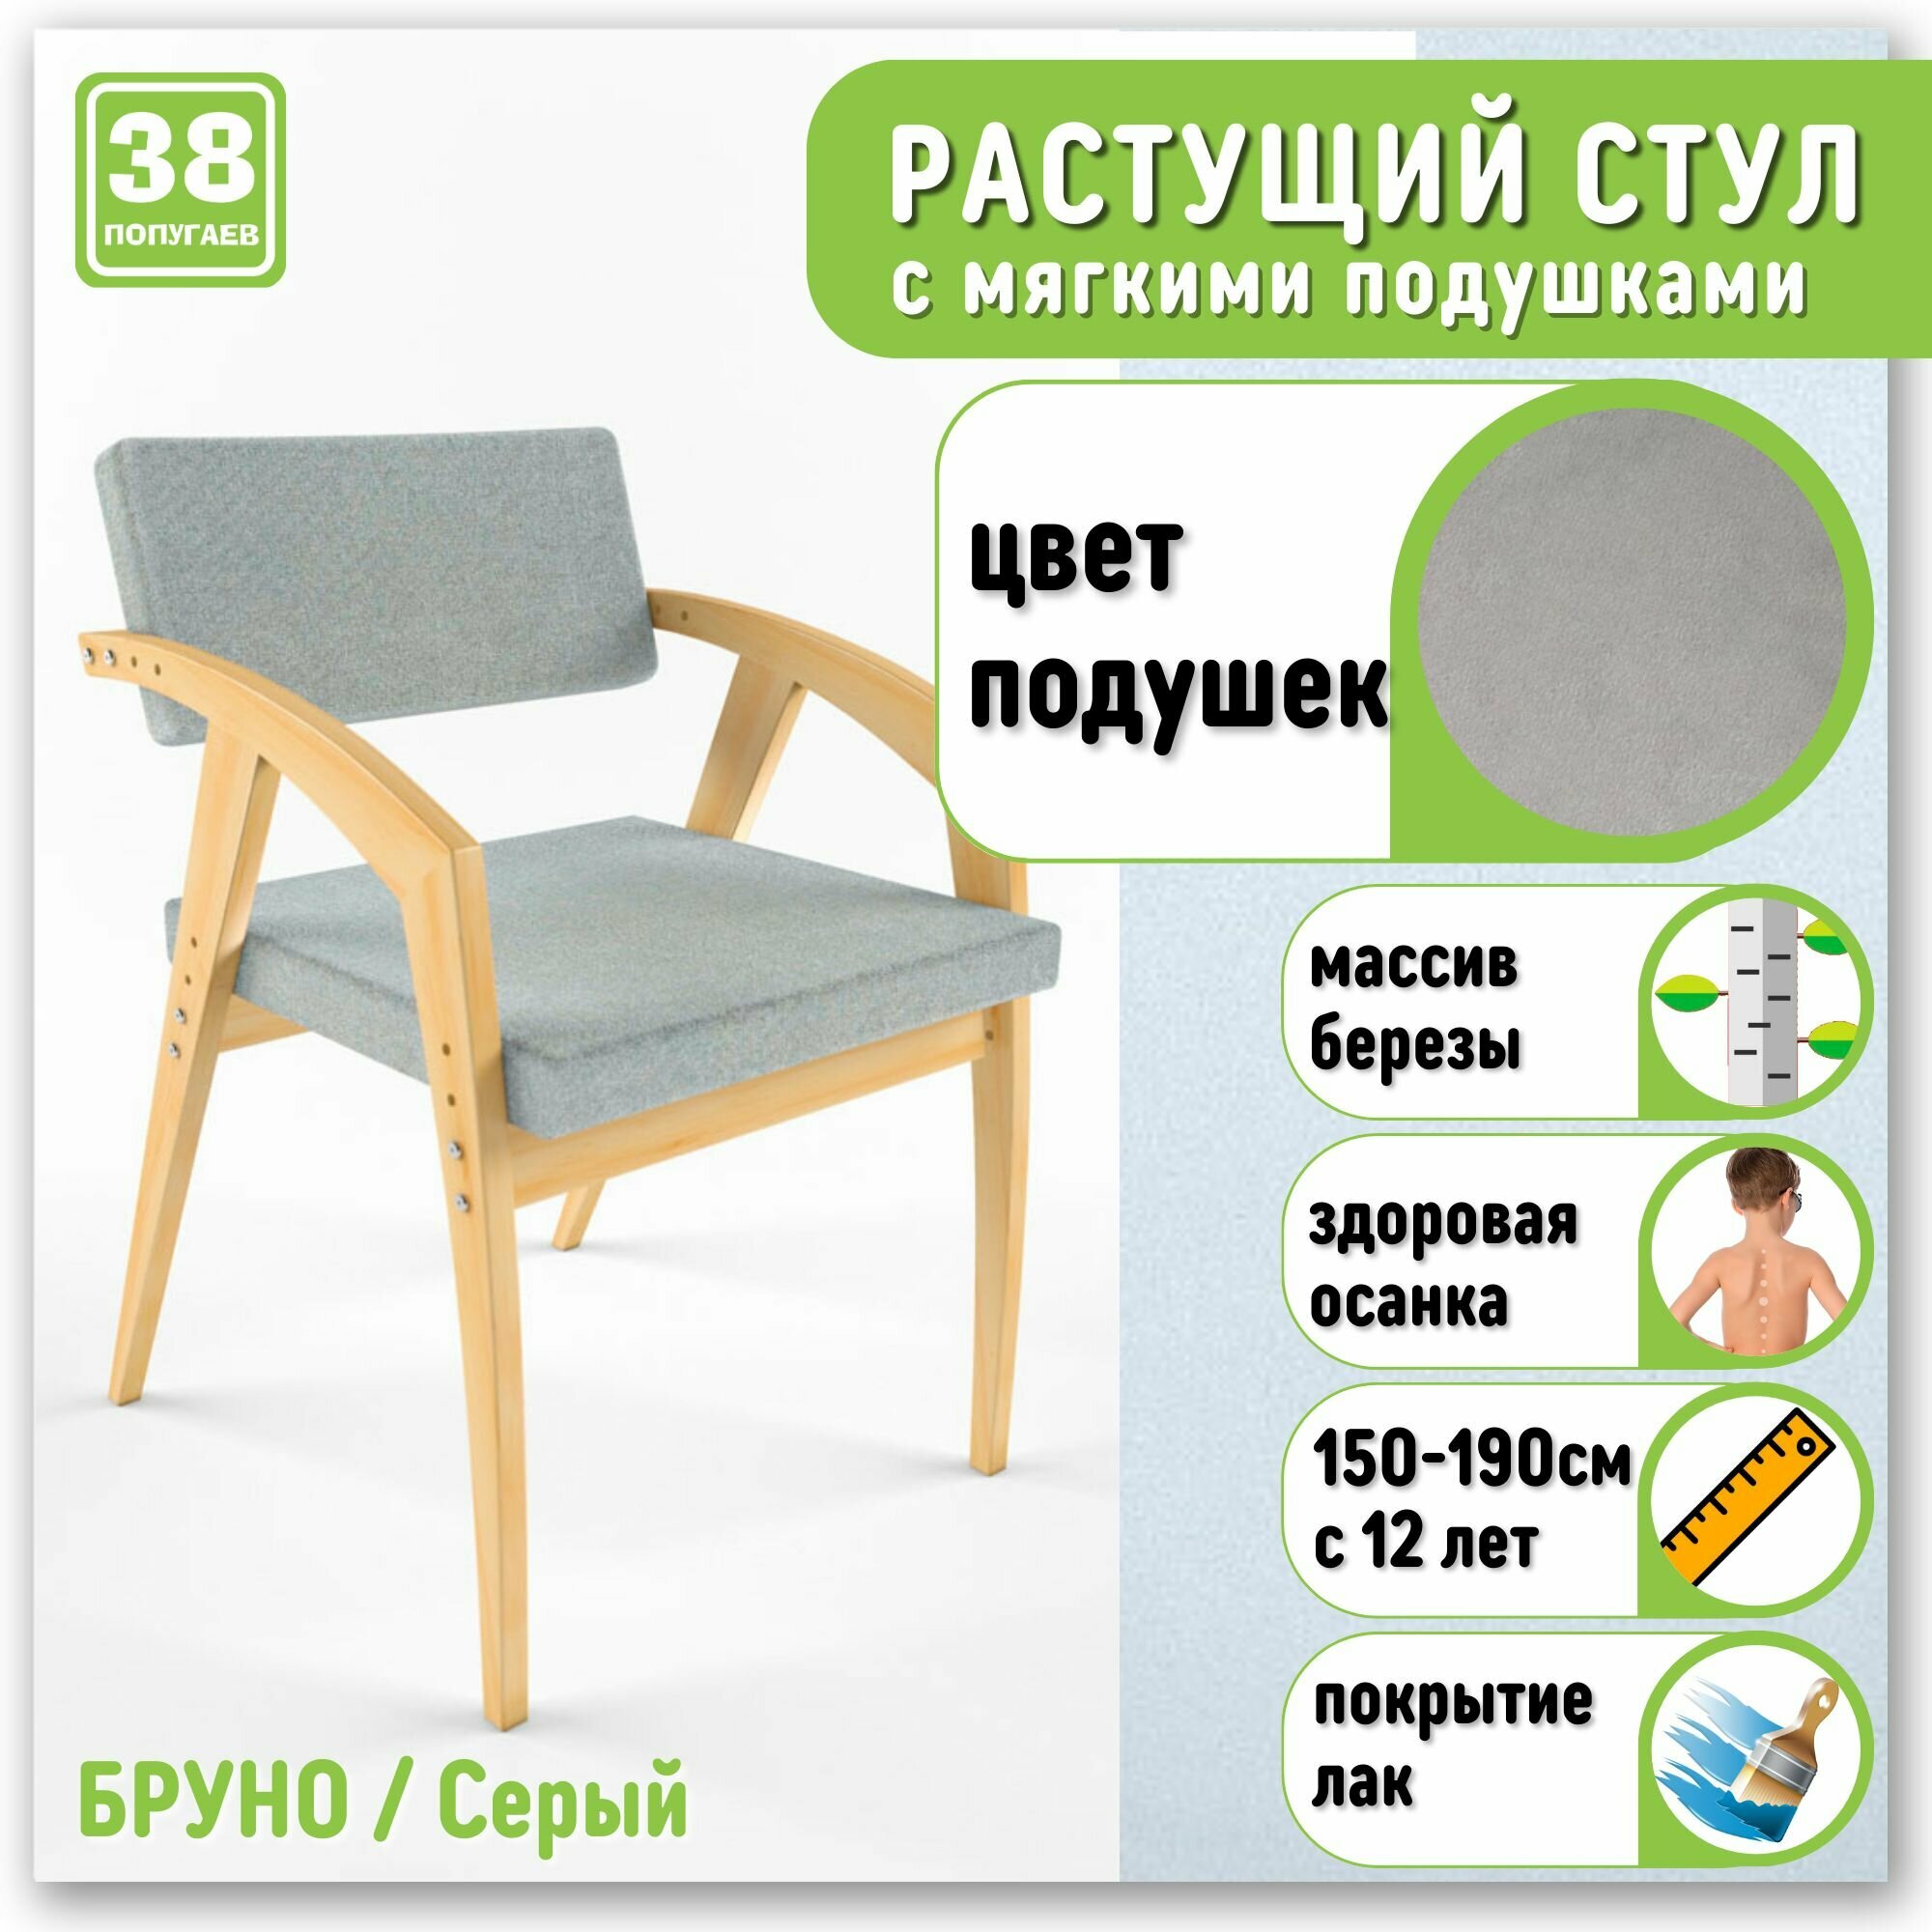 Растущий стул - кресло 38 Попугаев Бруно с мягким сиденьем и спинкой, для детей и подростков от 150 см (Береза/Серый)